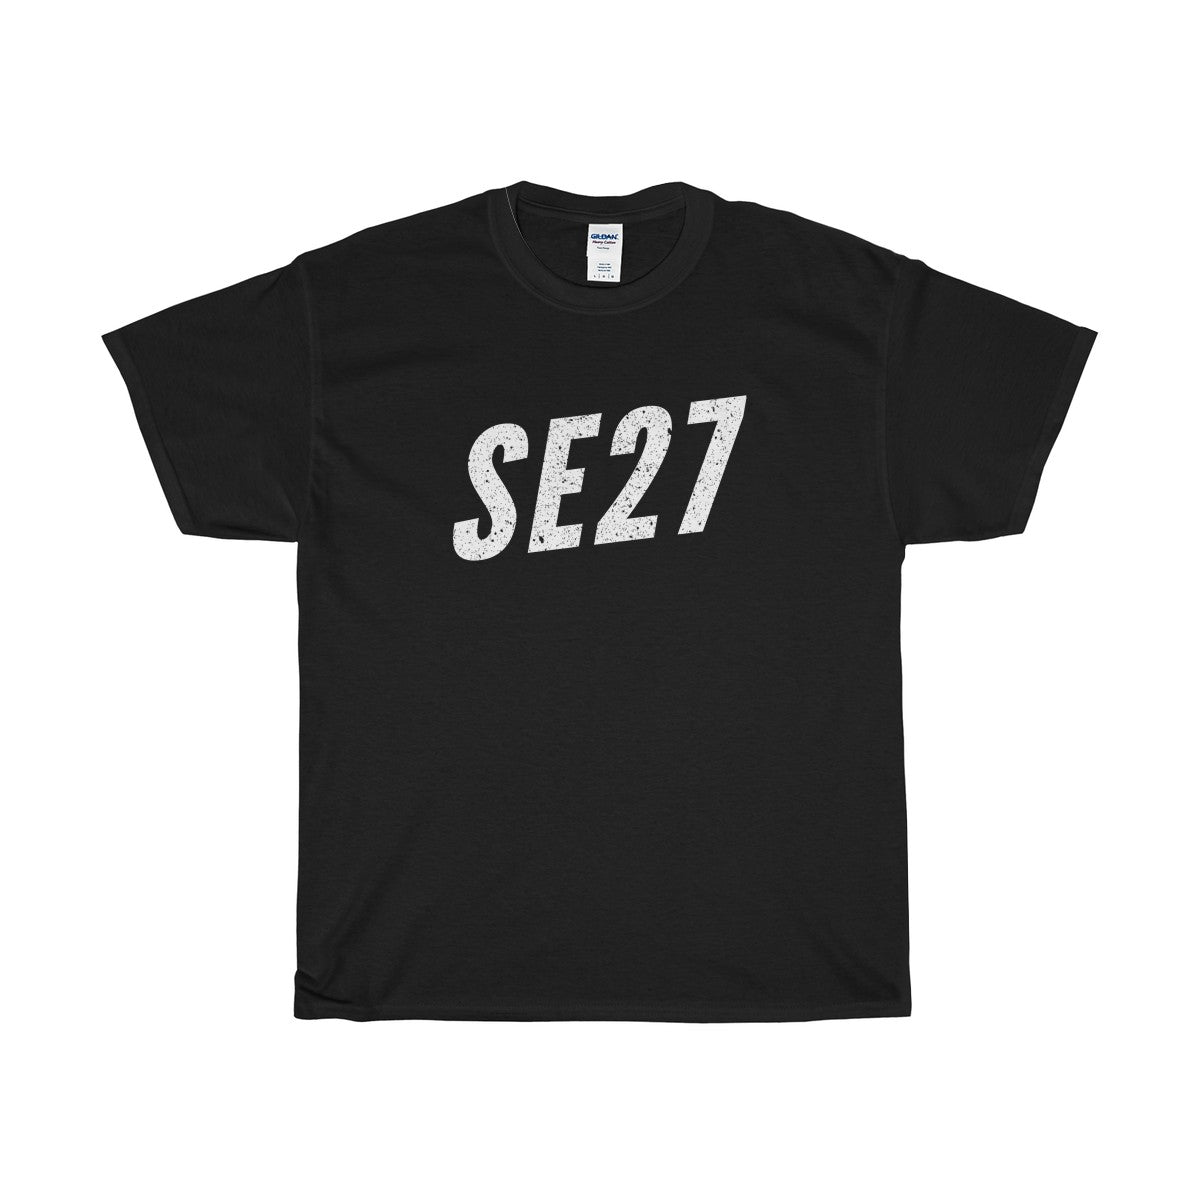 West Norwood SE27 T-Shirt